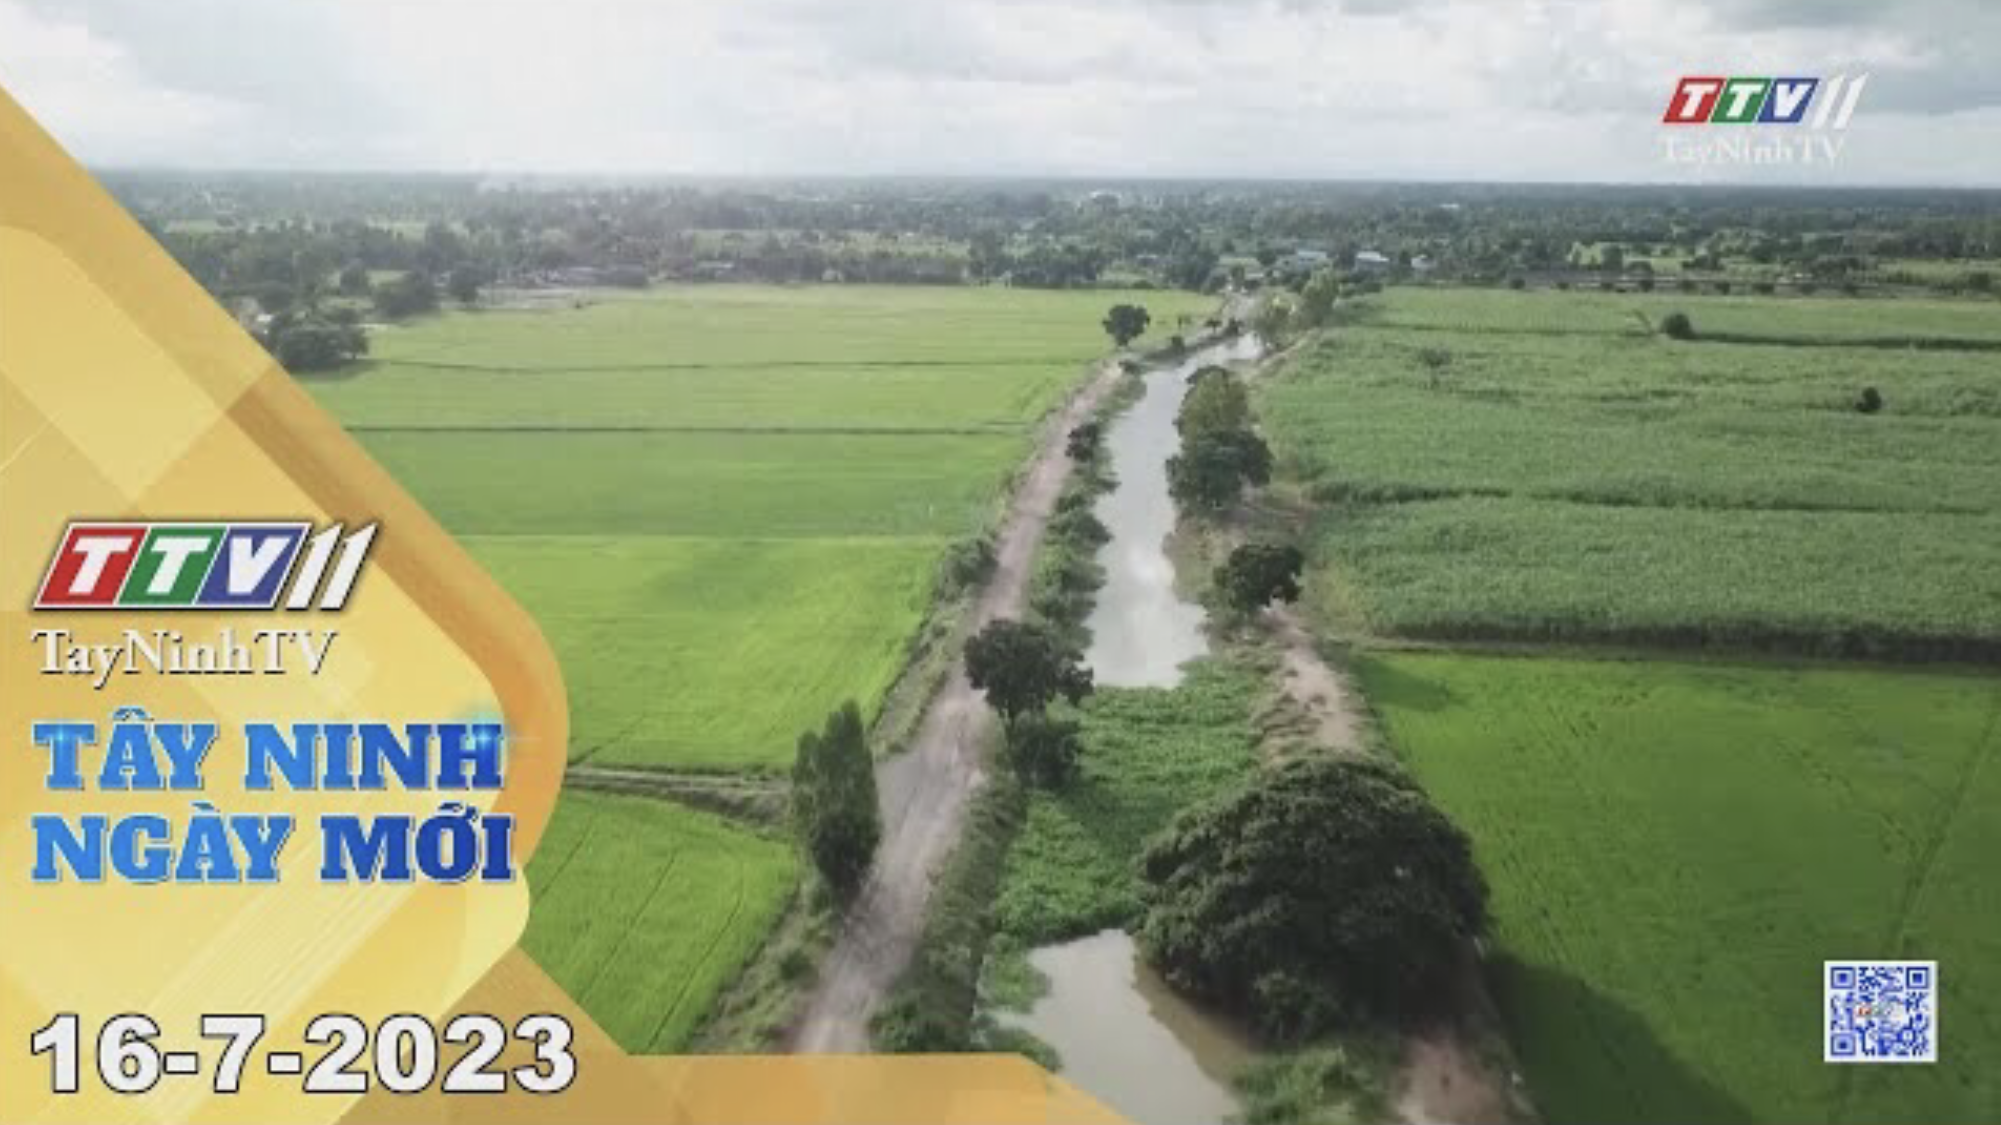 Tây Ninh ngày mới 16-7-2023 | Tin tức hôm nay | TayNinhTV